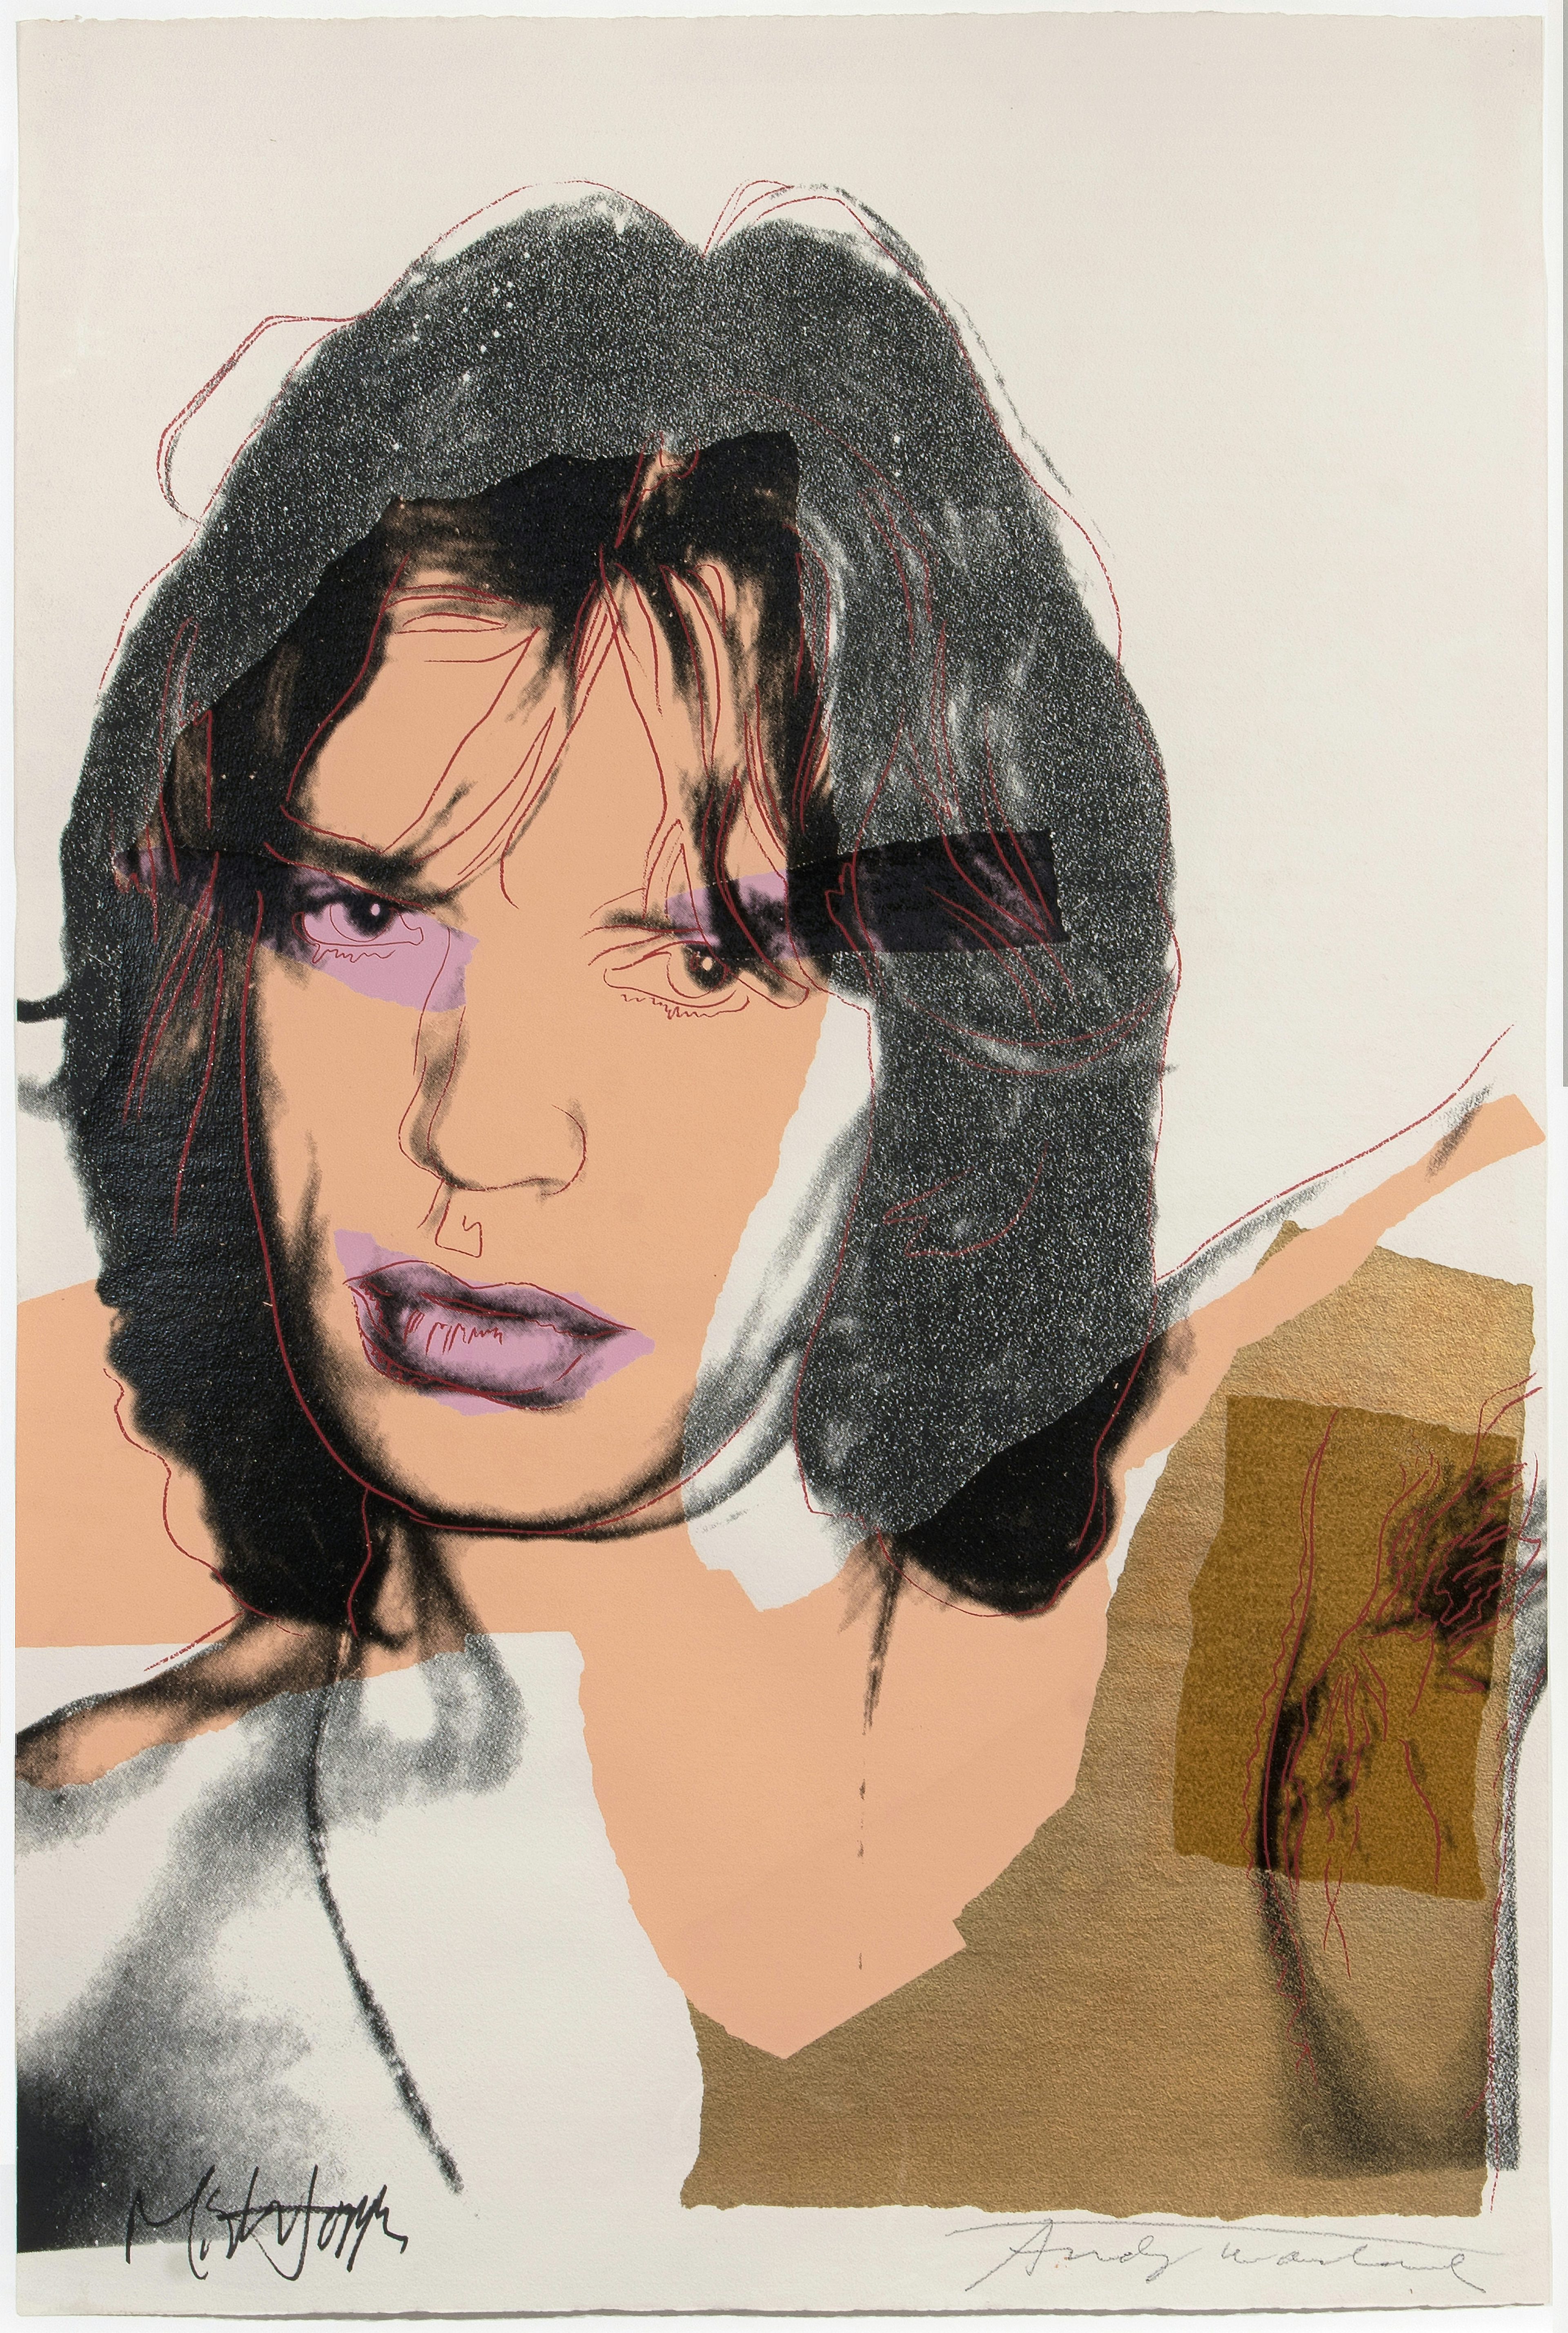 Andy Warhol's Mick Jagger